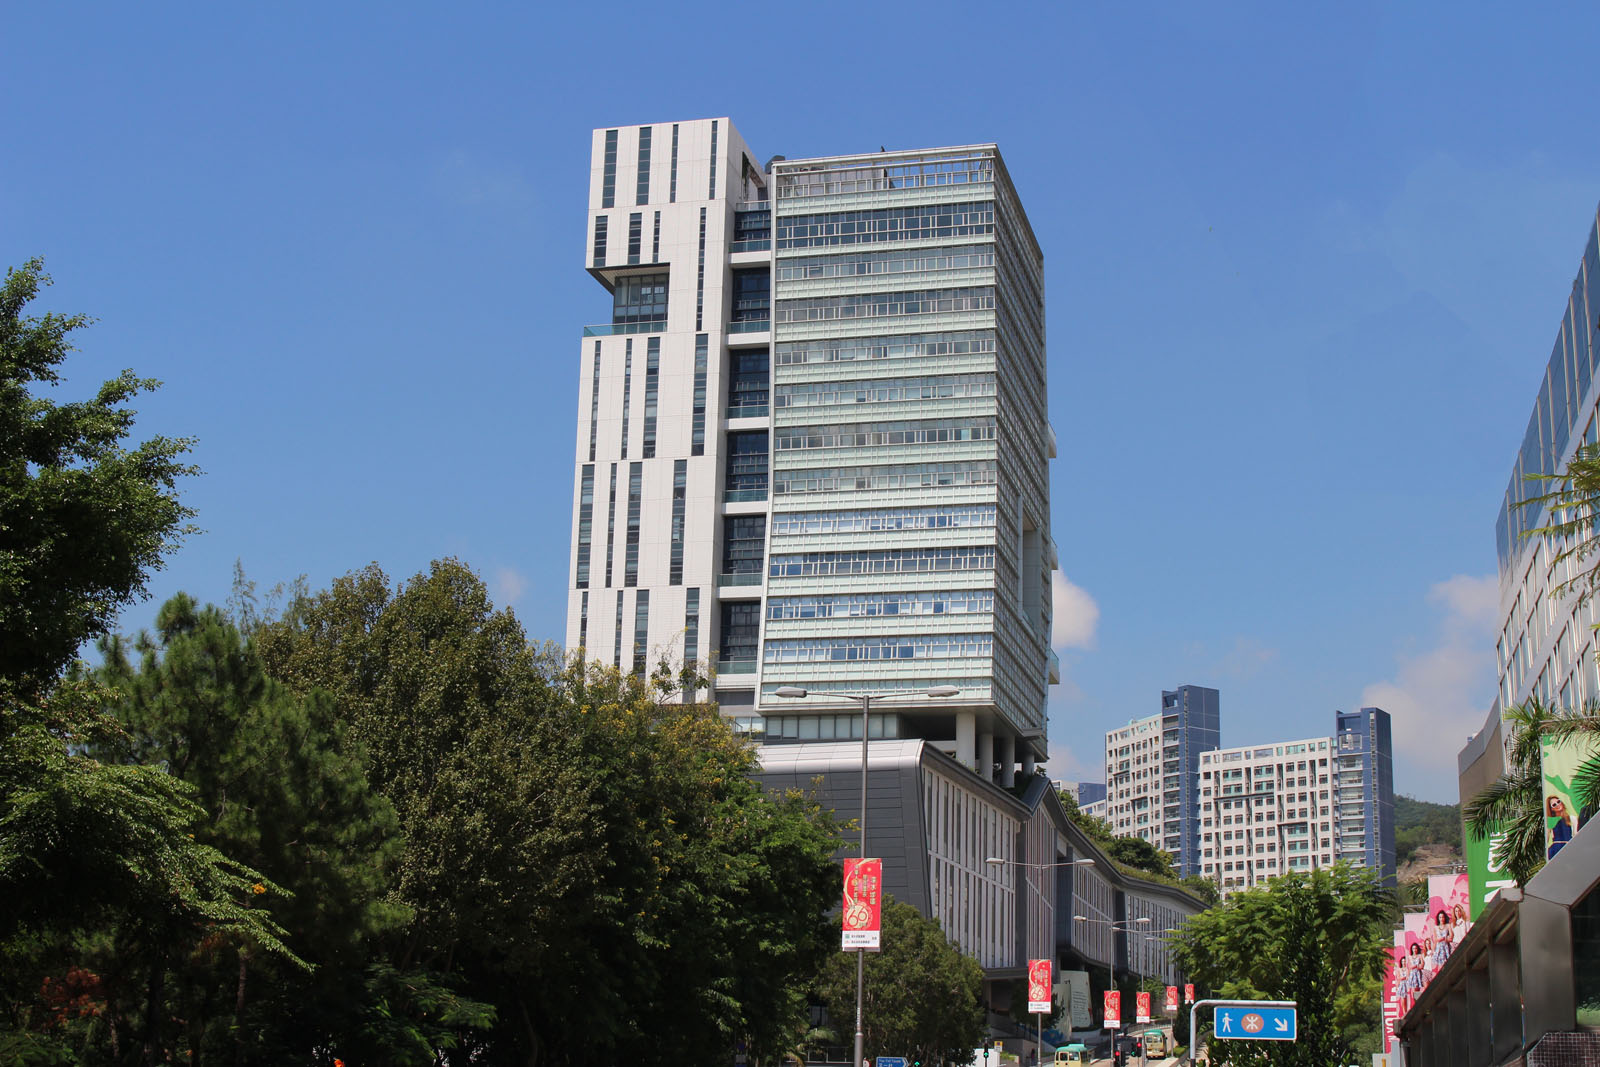 Photo 7: City University of Hong Kong